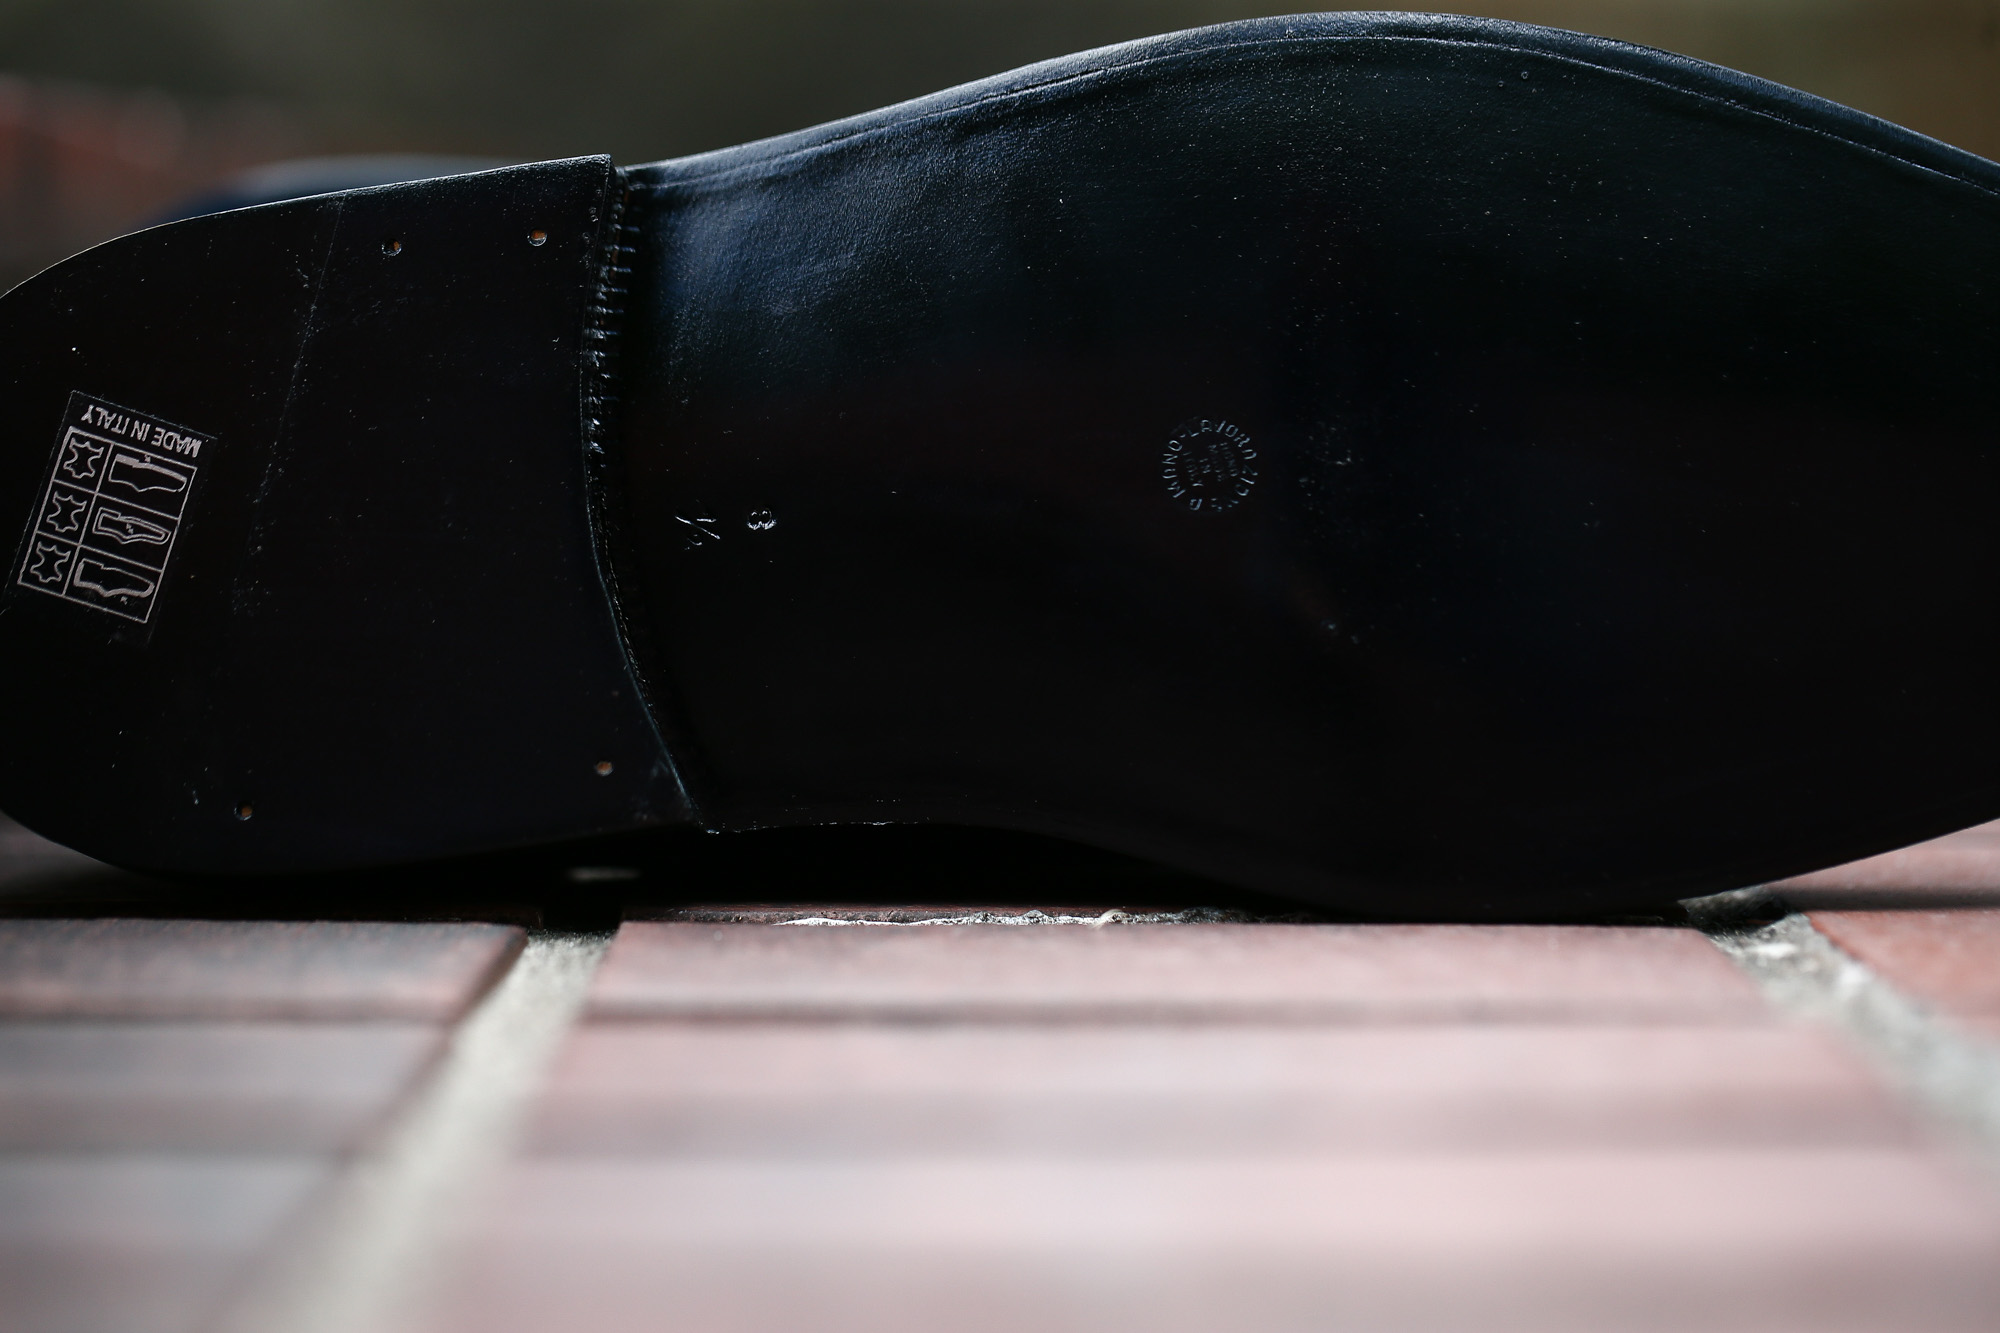 【ENZO BONAFE × HIROSHI TSUBOUCHI × Alto e Diritto /// エンツォボナフェ × ヒロシツボウチ × アルト エ デリット】 ART.EB-02 Double Monk Strap Shoes Bonaudo Museum Calf Leather ボナウド社 ミュージアムカーフ Norwegian Welted Process ノルベジェーゼ製法 ダブルモンクストラップシューズ PEWTER (ピューター) made in italy (イタリア製)　2017 秋冬新作 【Special Model】 enzobonafe hiroshitsubouchi エンツォボナフェ 愛知 名古屋 Alto e Diritto アルト エ デリット ダブルモンク